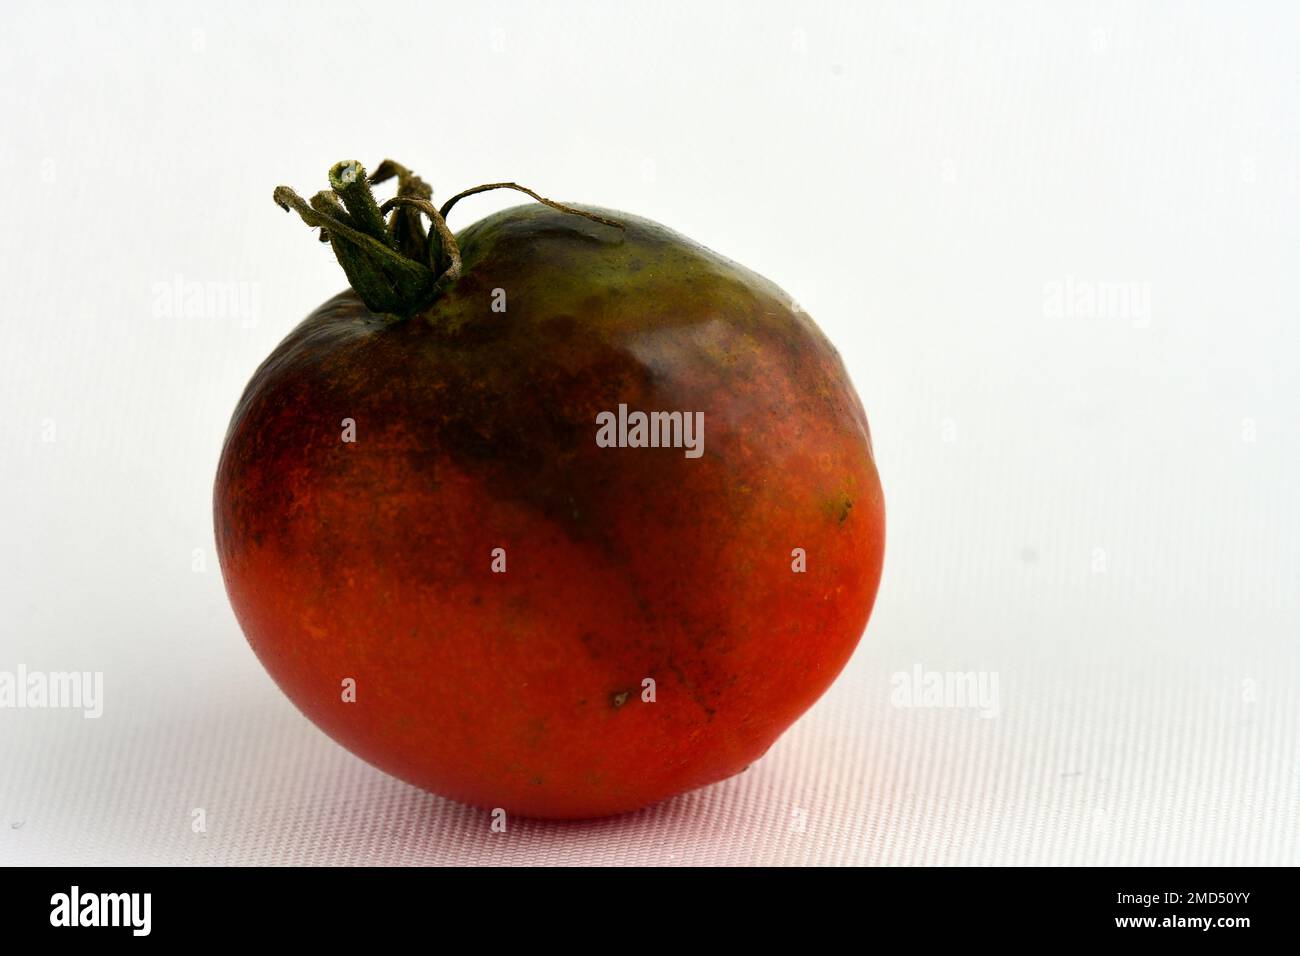 Tomatenstamm durch Spätblight befallen - Phytophthora infestans. Dunkelschwarze oder violette Flecken breiten sich bemerkenswert schnell von den Blättern zu den Stängeln aus Stockfoto